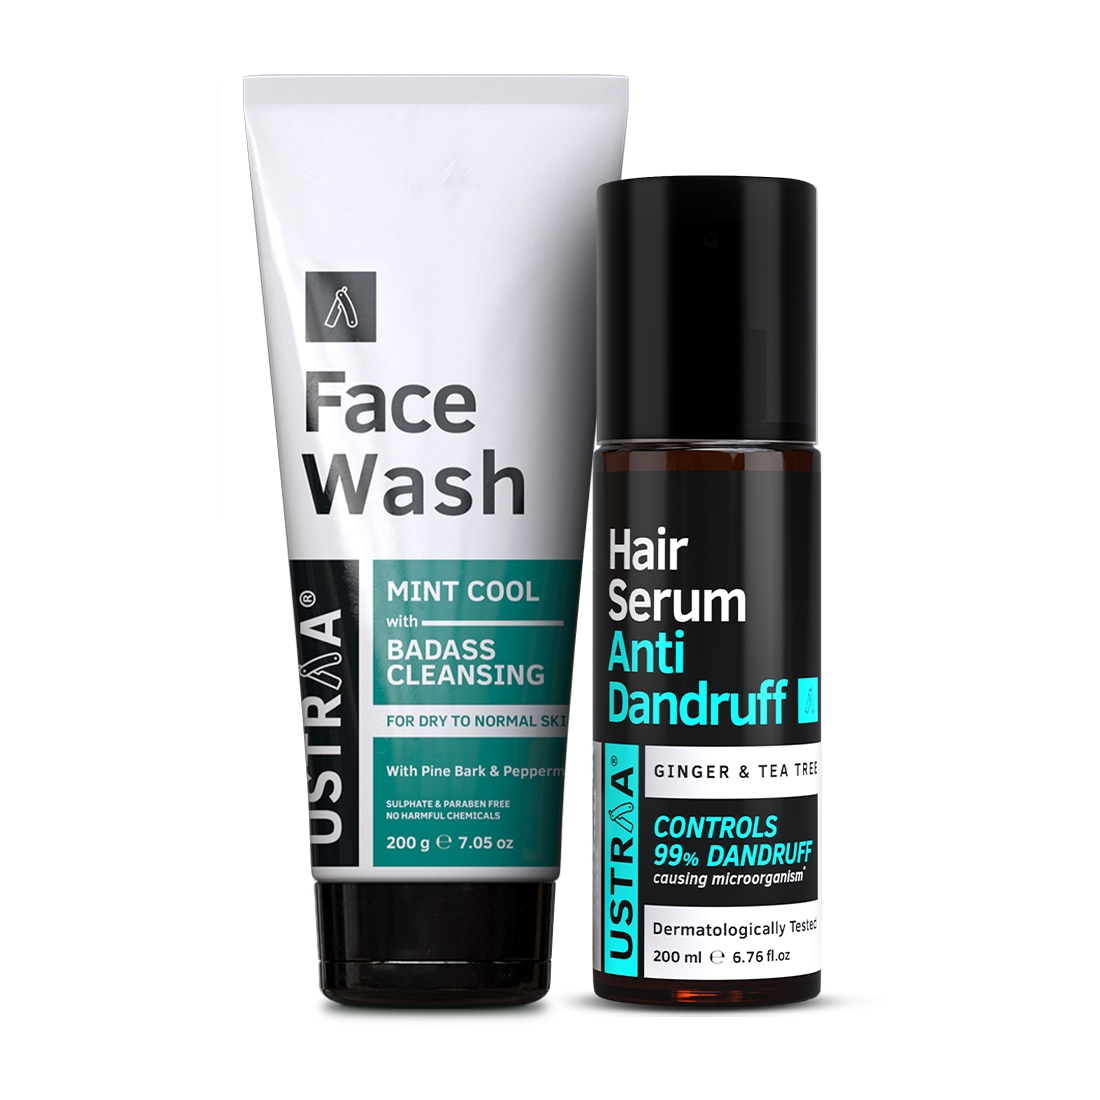 Ustraa Anti Dandruff Serum 200ml & Face Wash Dry Skin 200g